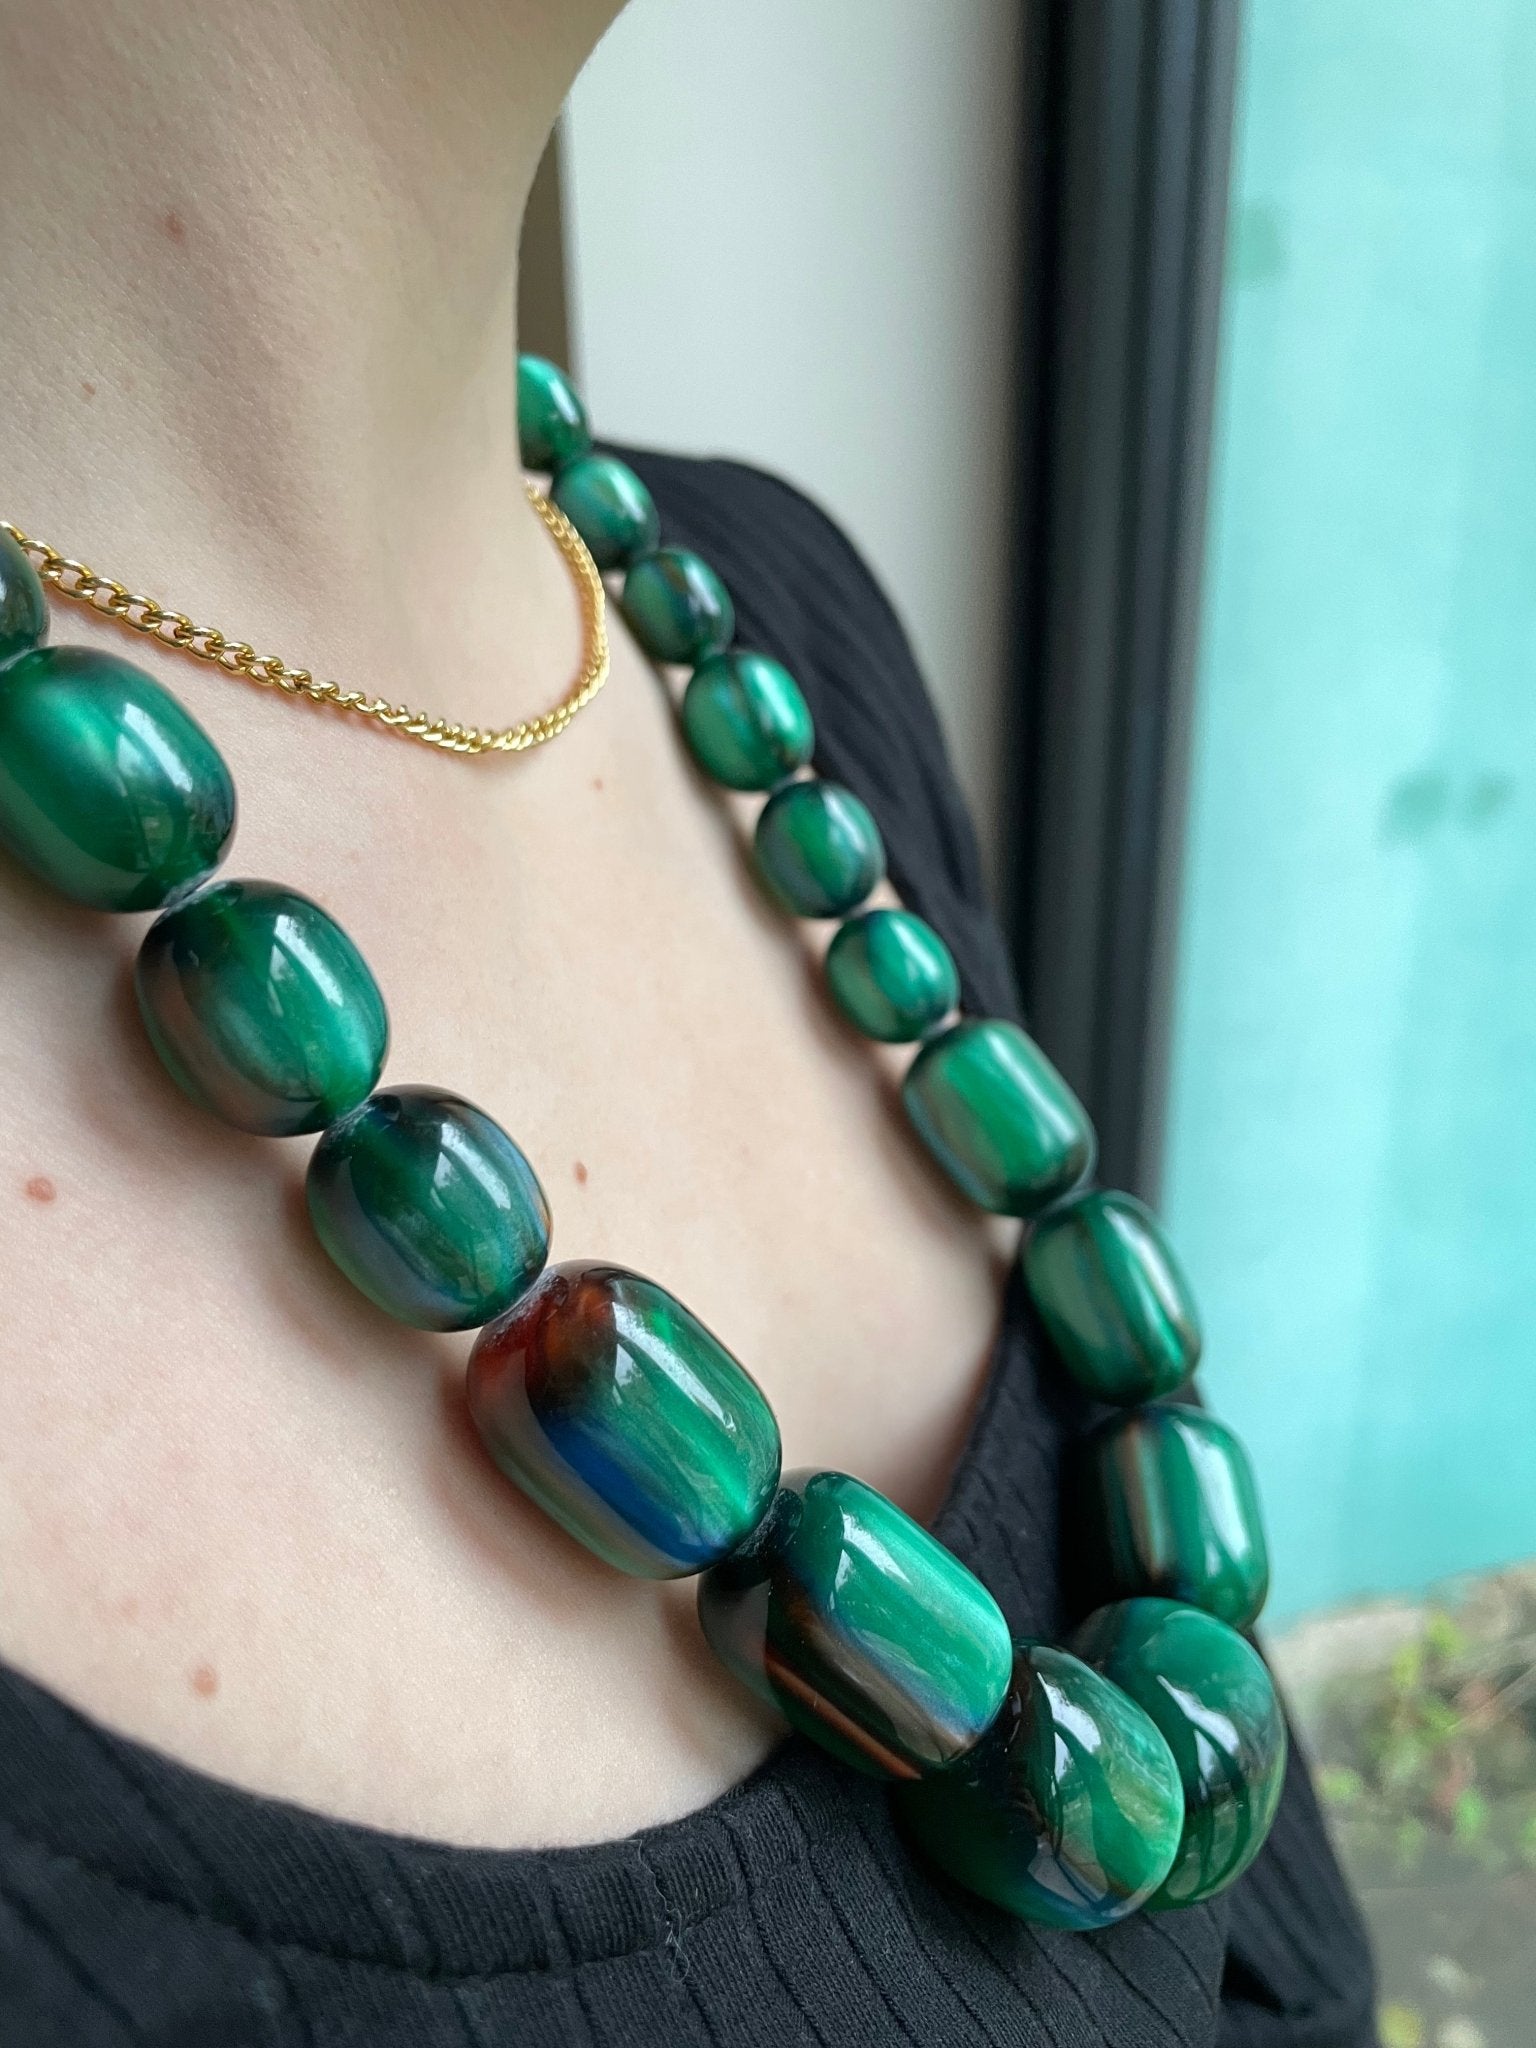 Green shimmer resin necklace - Natalia Willmott